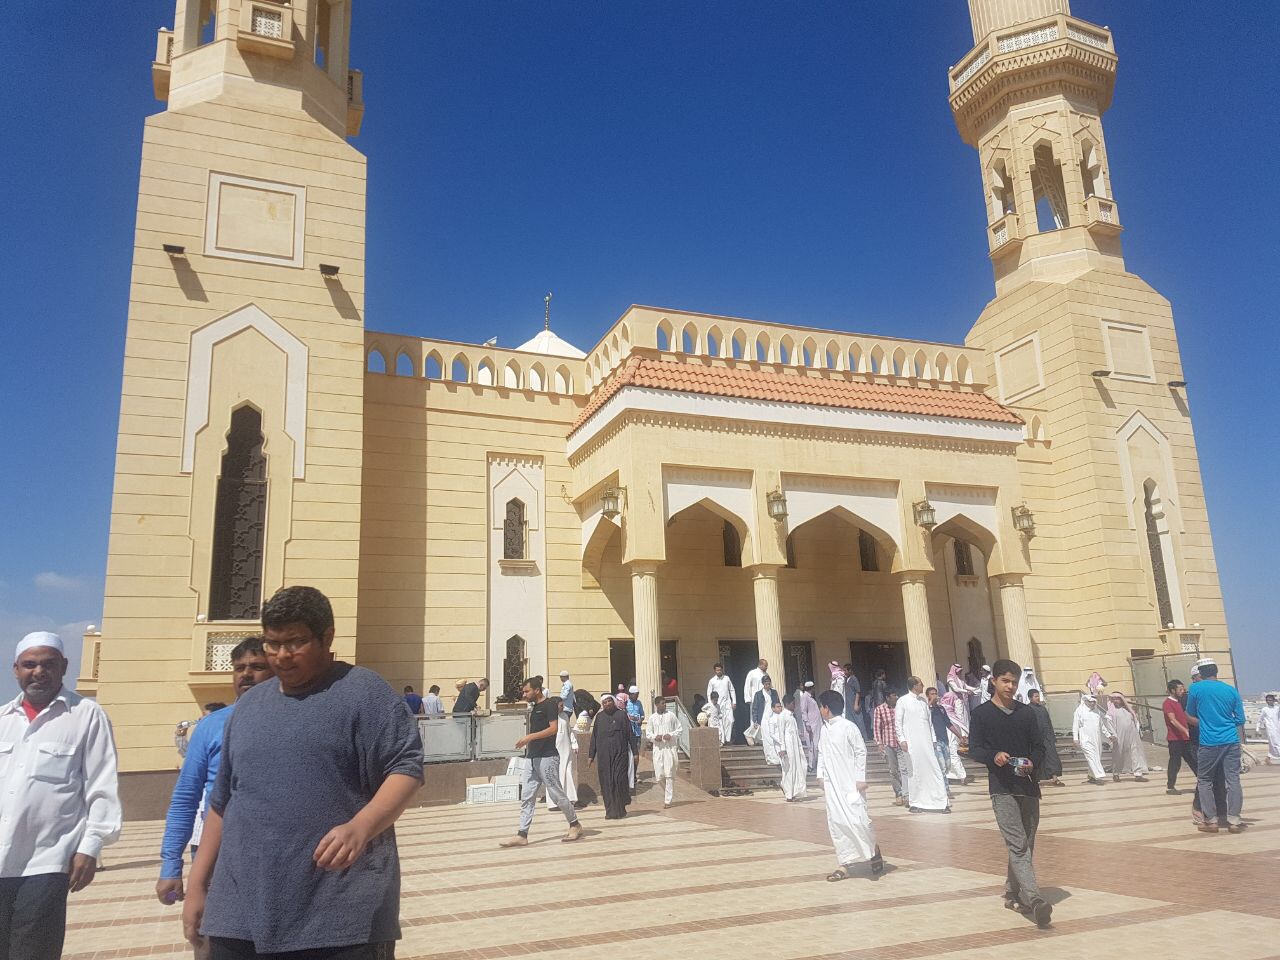 بالصور.. افتتاح جامع أبو بكر الصديق بأبها بعد إعادة ترميمه بنحو 7 ملايين ريال